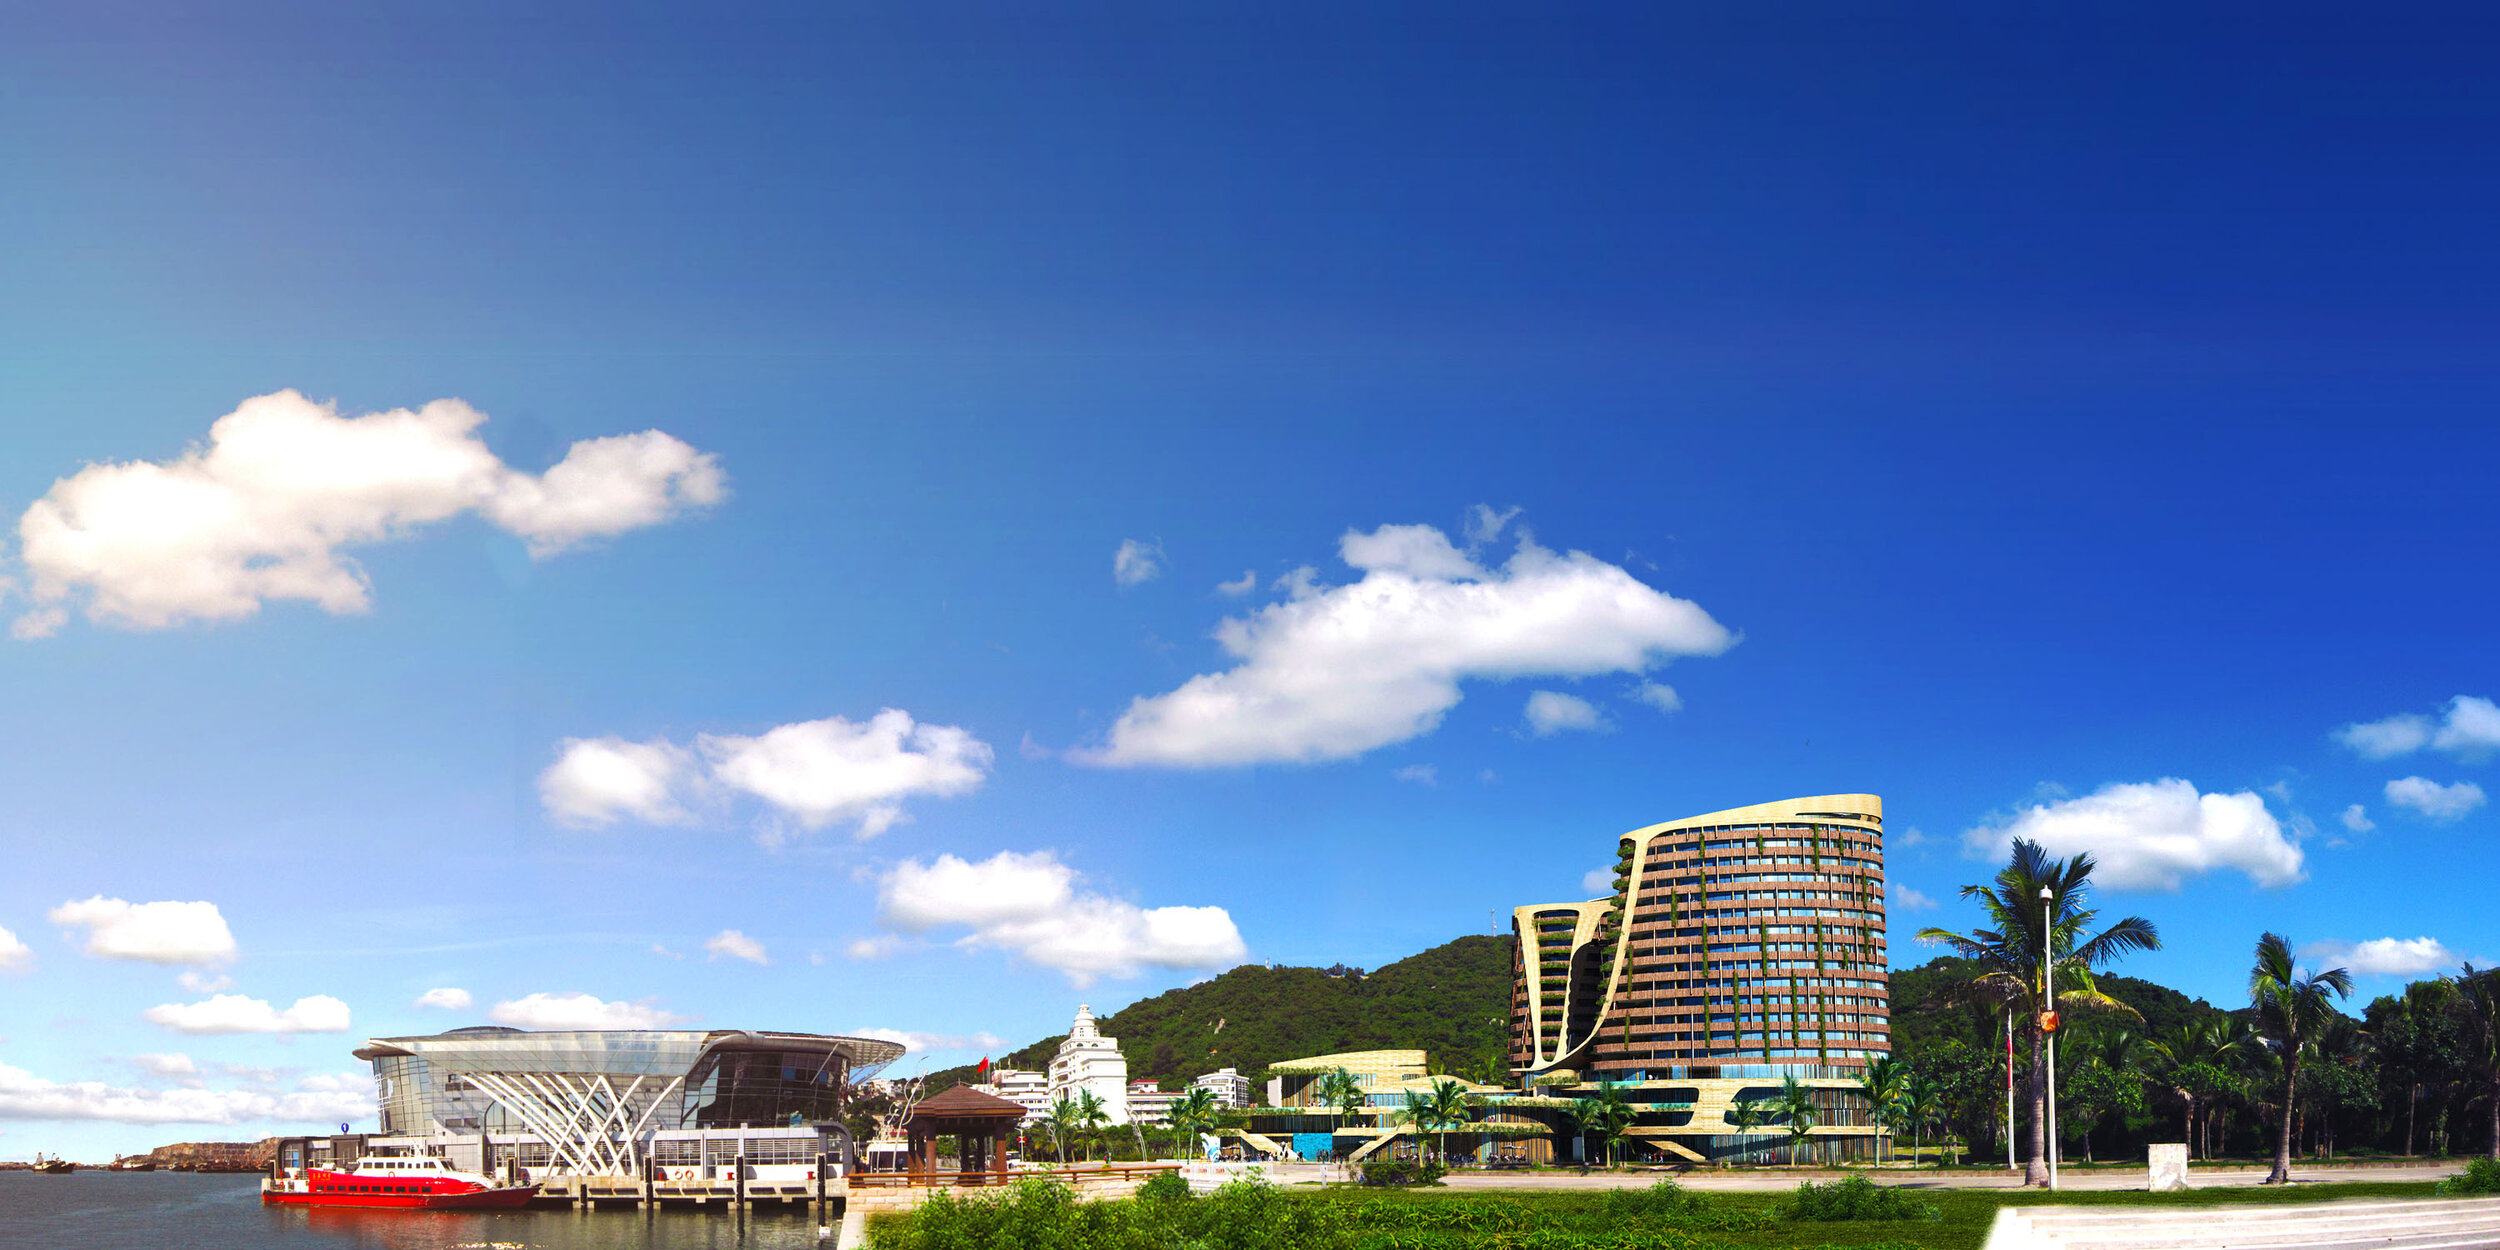 NDA-22. Zhuhai Guishan Island Maritime Complex and Resort (4).jpg